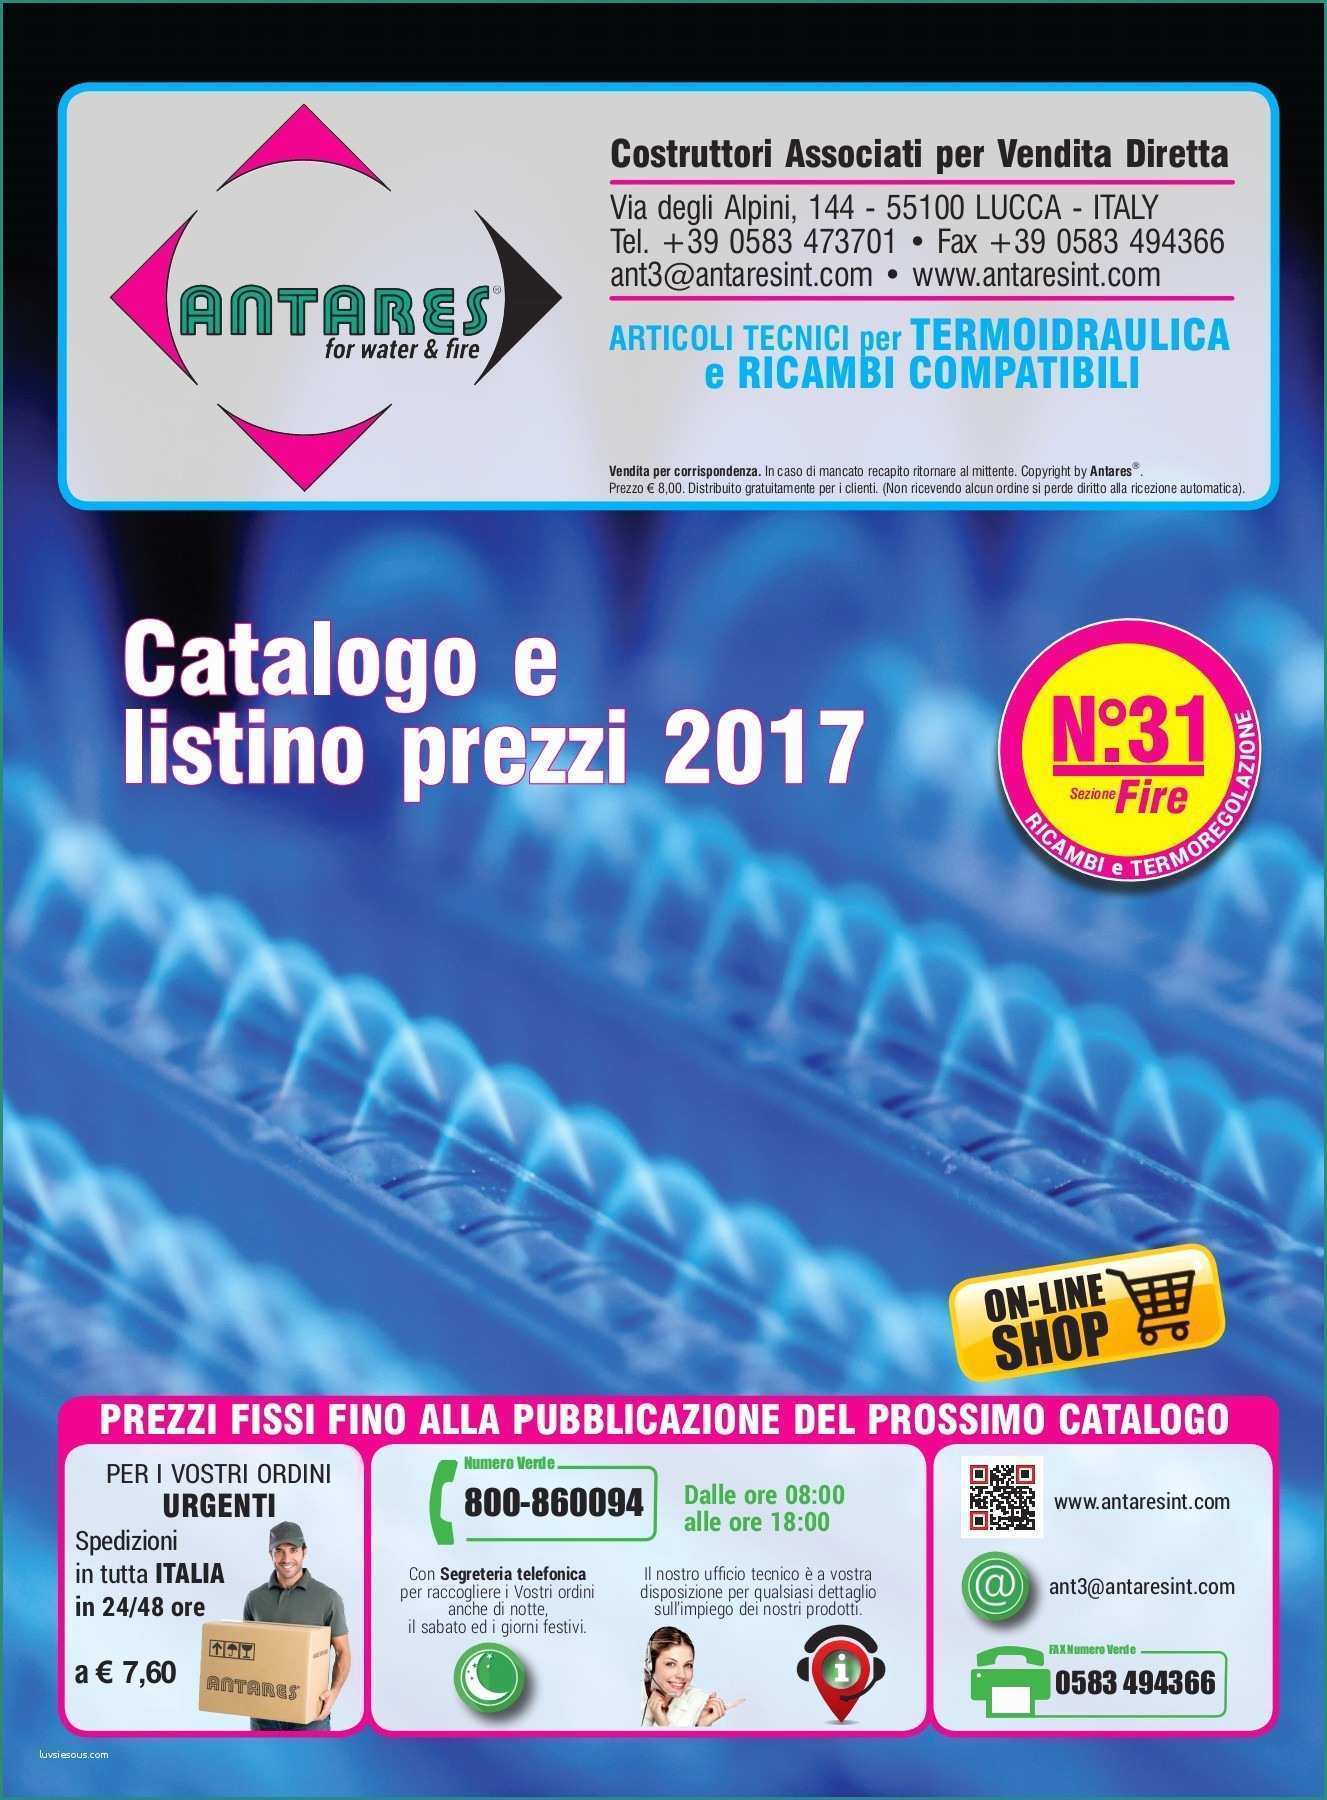 Termostato Caldaia Beretta istruzioni E Cat31 Fire It Web Pages 1 50 Text Version